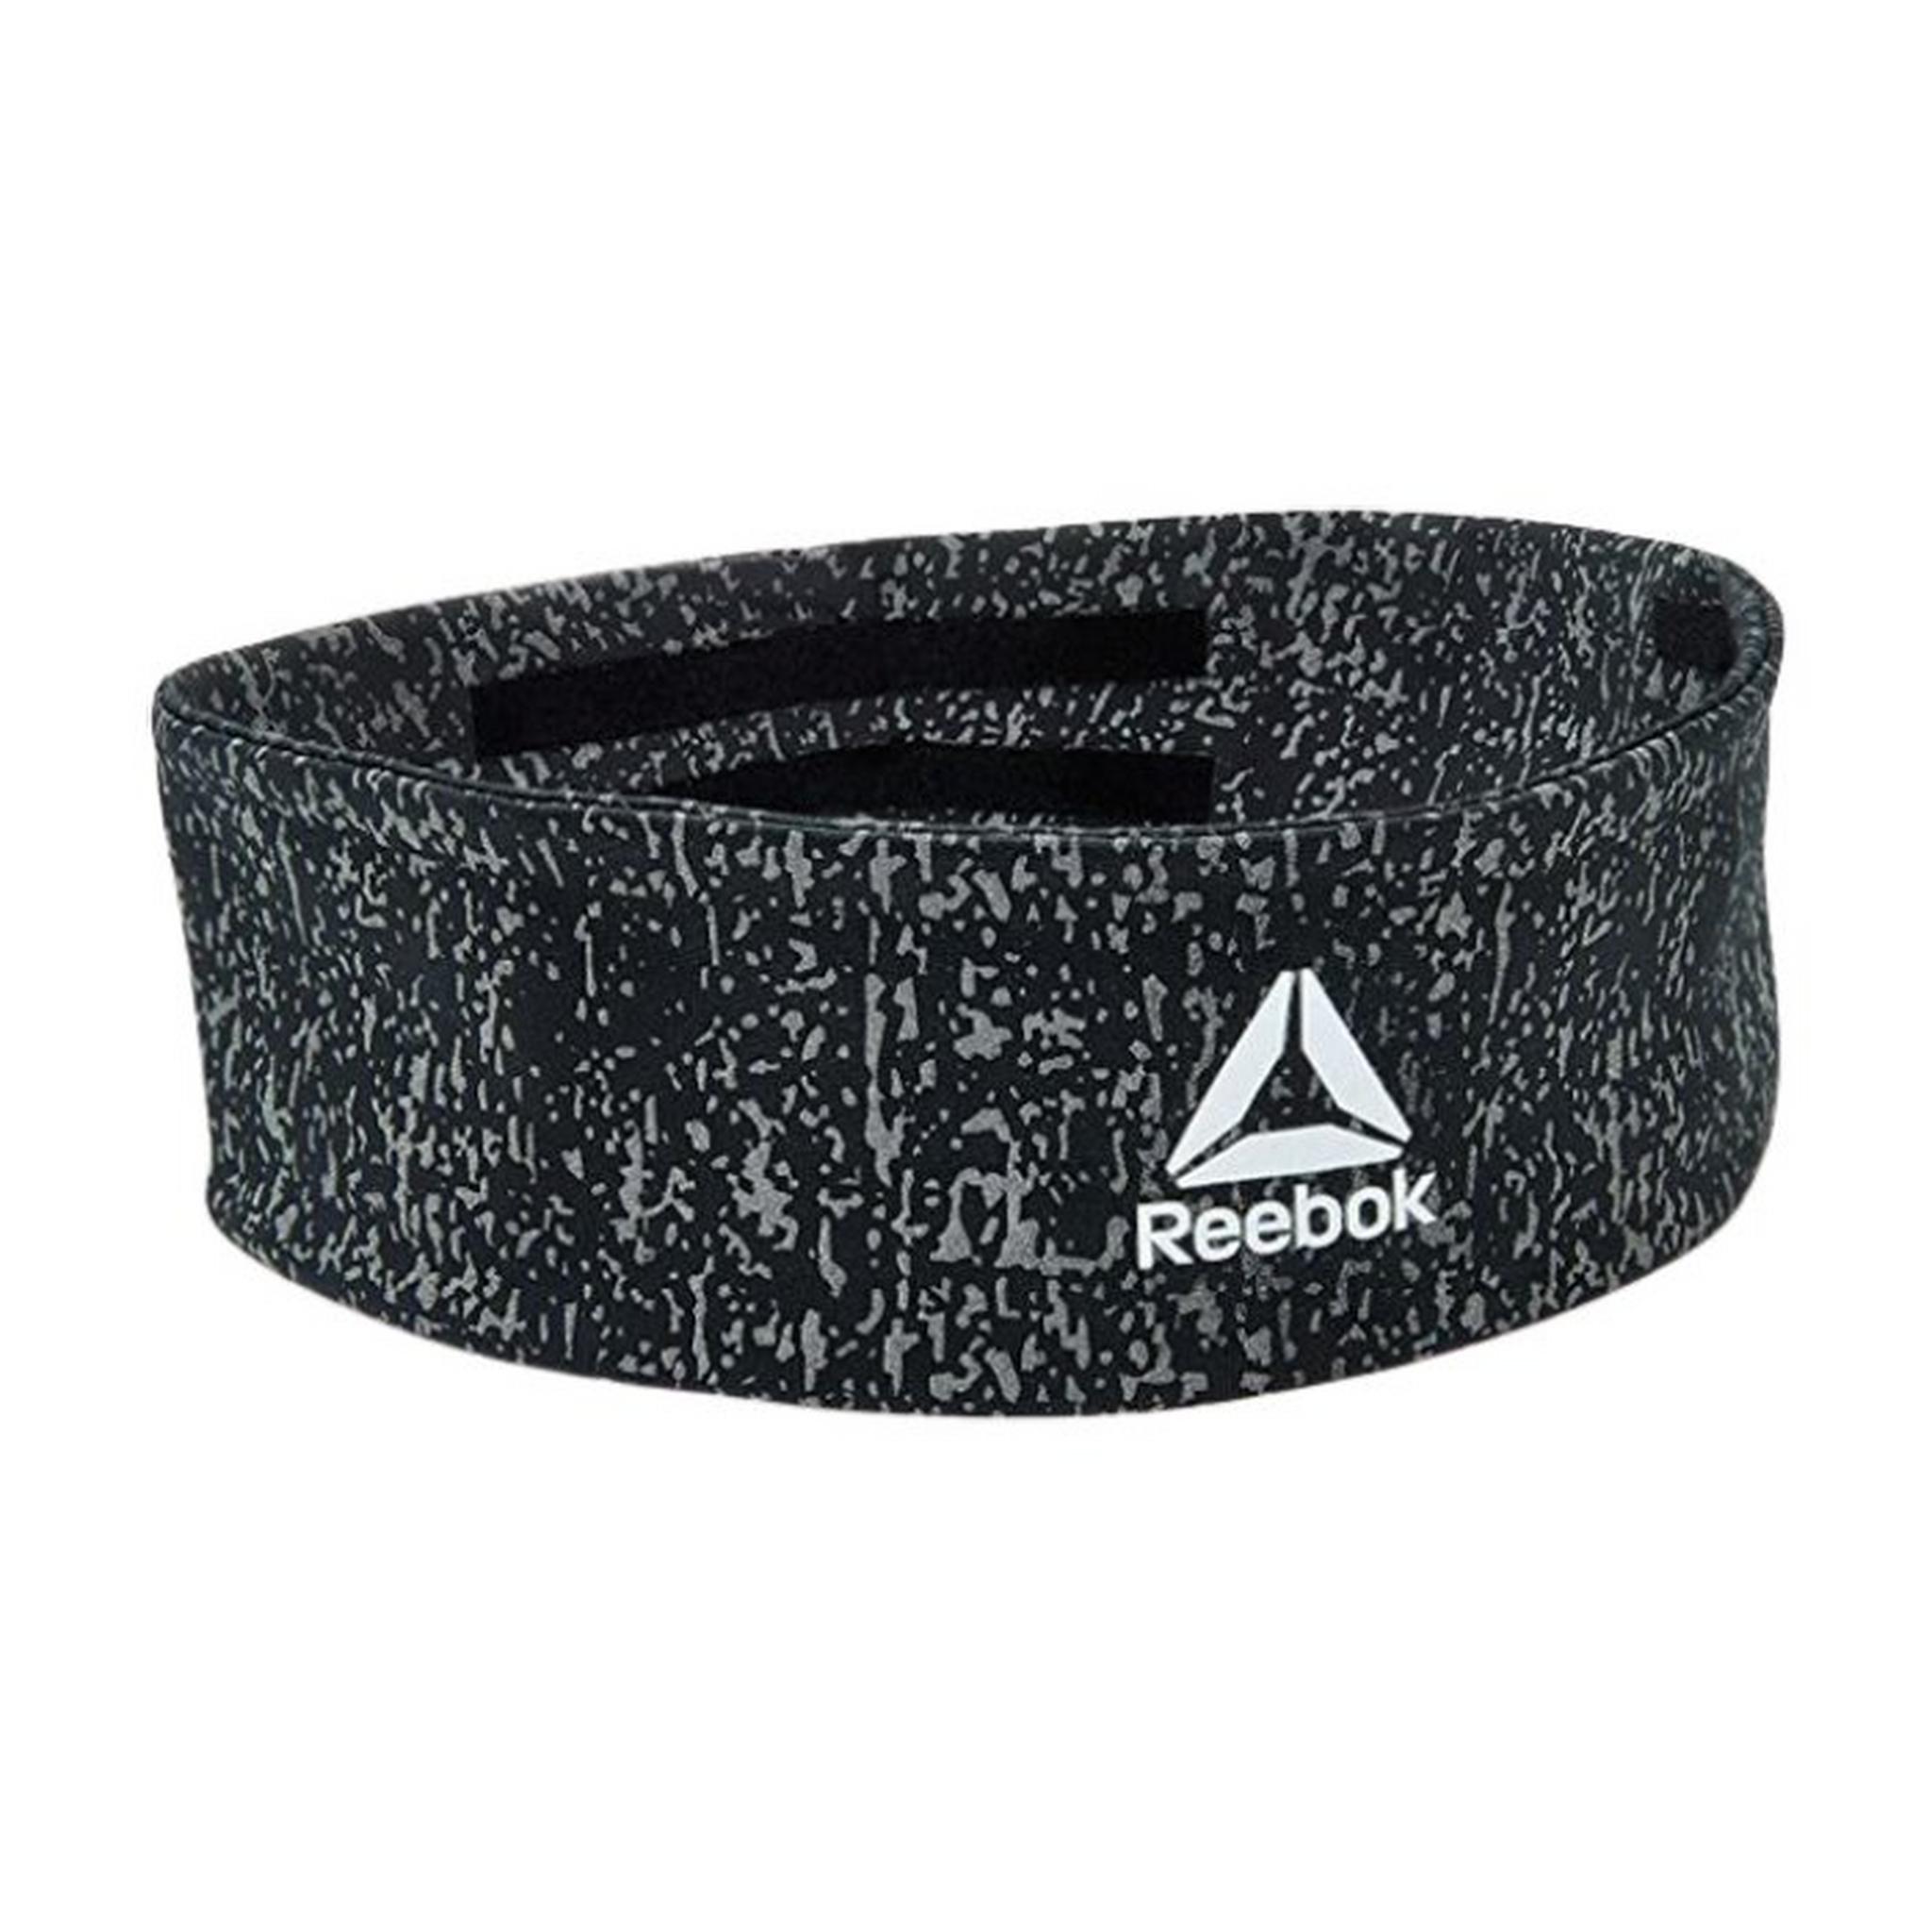 حزام للرأس من ريبوك - أسود